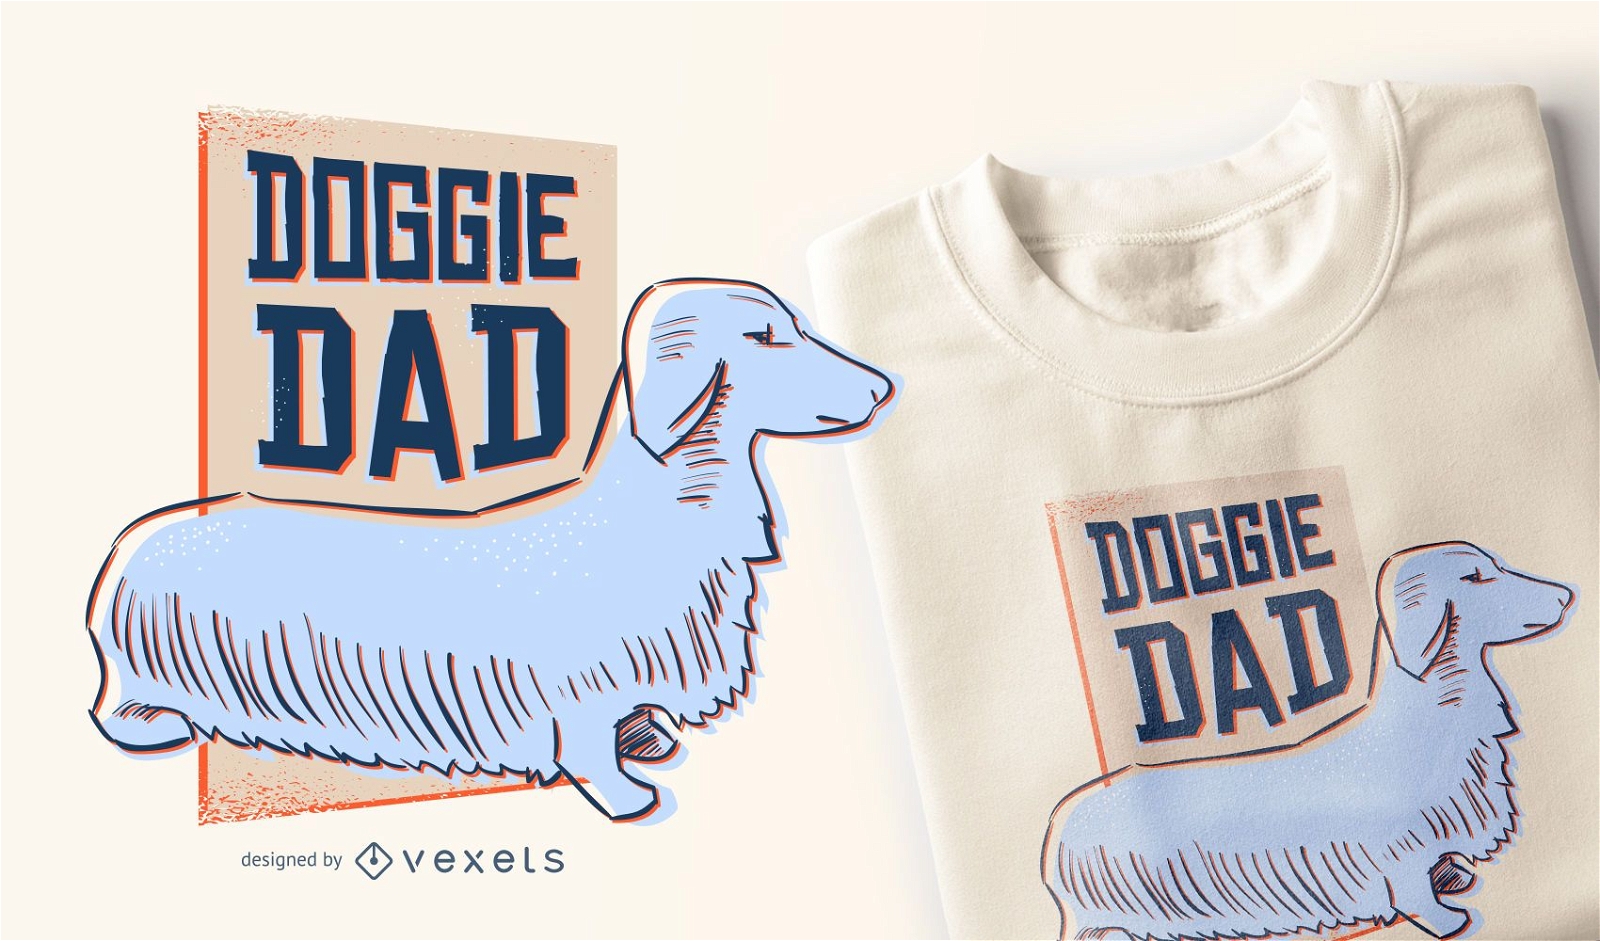 Doggie dad t-shirt design